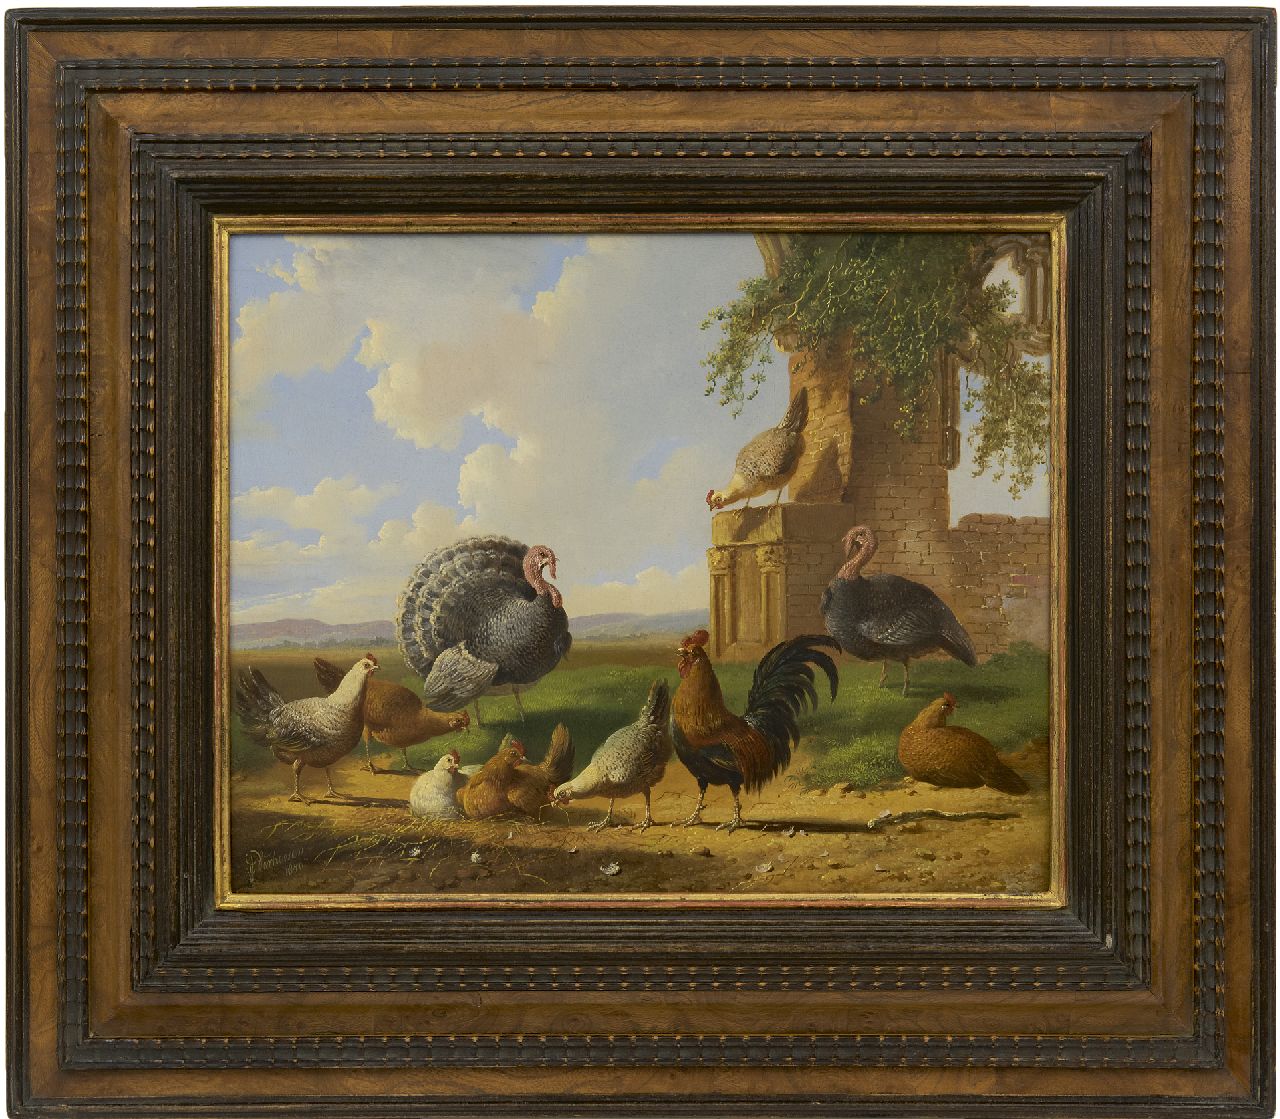 Verhoesen A.  | Albertus Verhoesen | Schilderijen te koop aangeboden | Kalkoenen en pluimvee in een landschap, olieverf op paneel 30,5 x 37,6 cm, gesigneerd linksonder en gedateerd 1870